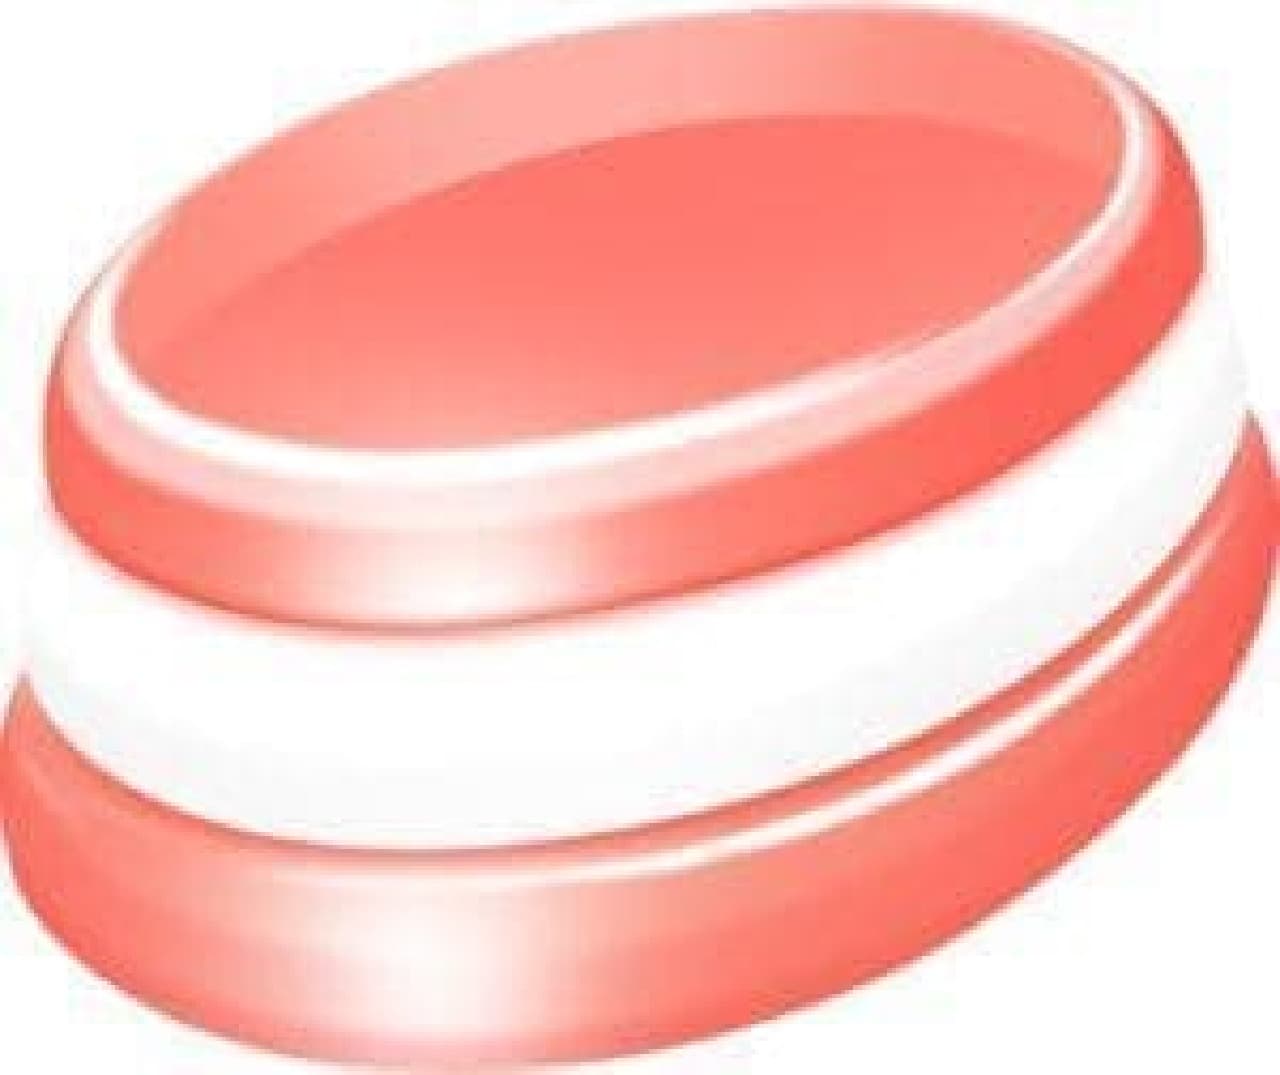 ミニーデザインの「キシリクリスタル ピンクグレープフルーツミントのど飴」